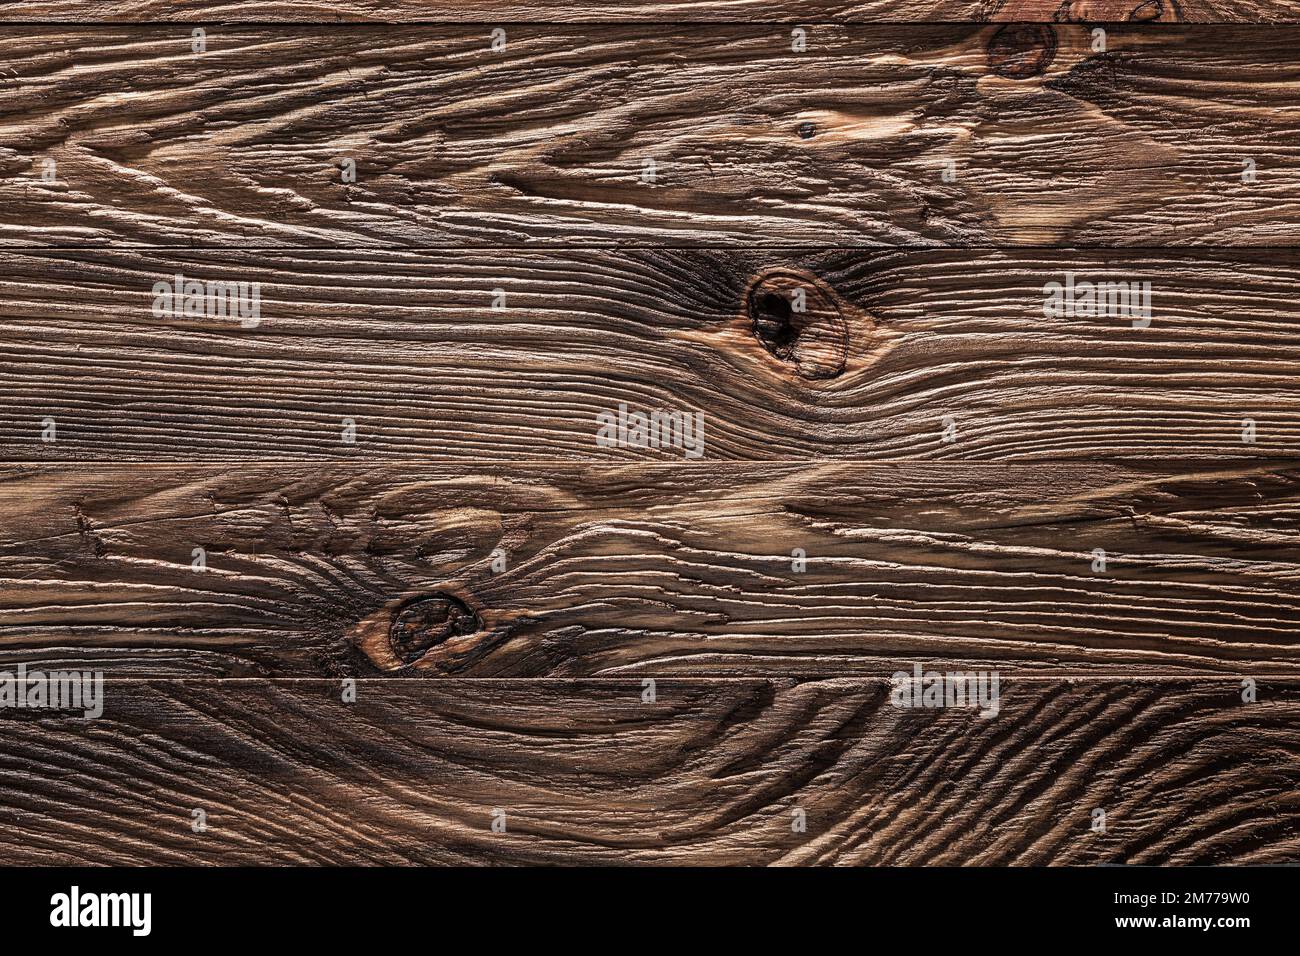 Nahaufnahme von texturierten Holzbrettern im Vintage-Stil Stockfoto